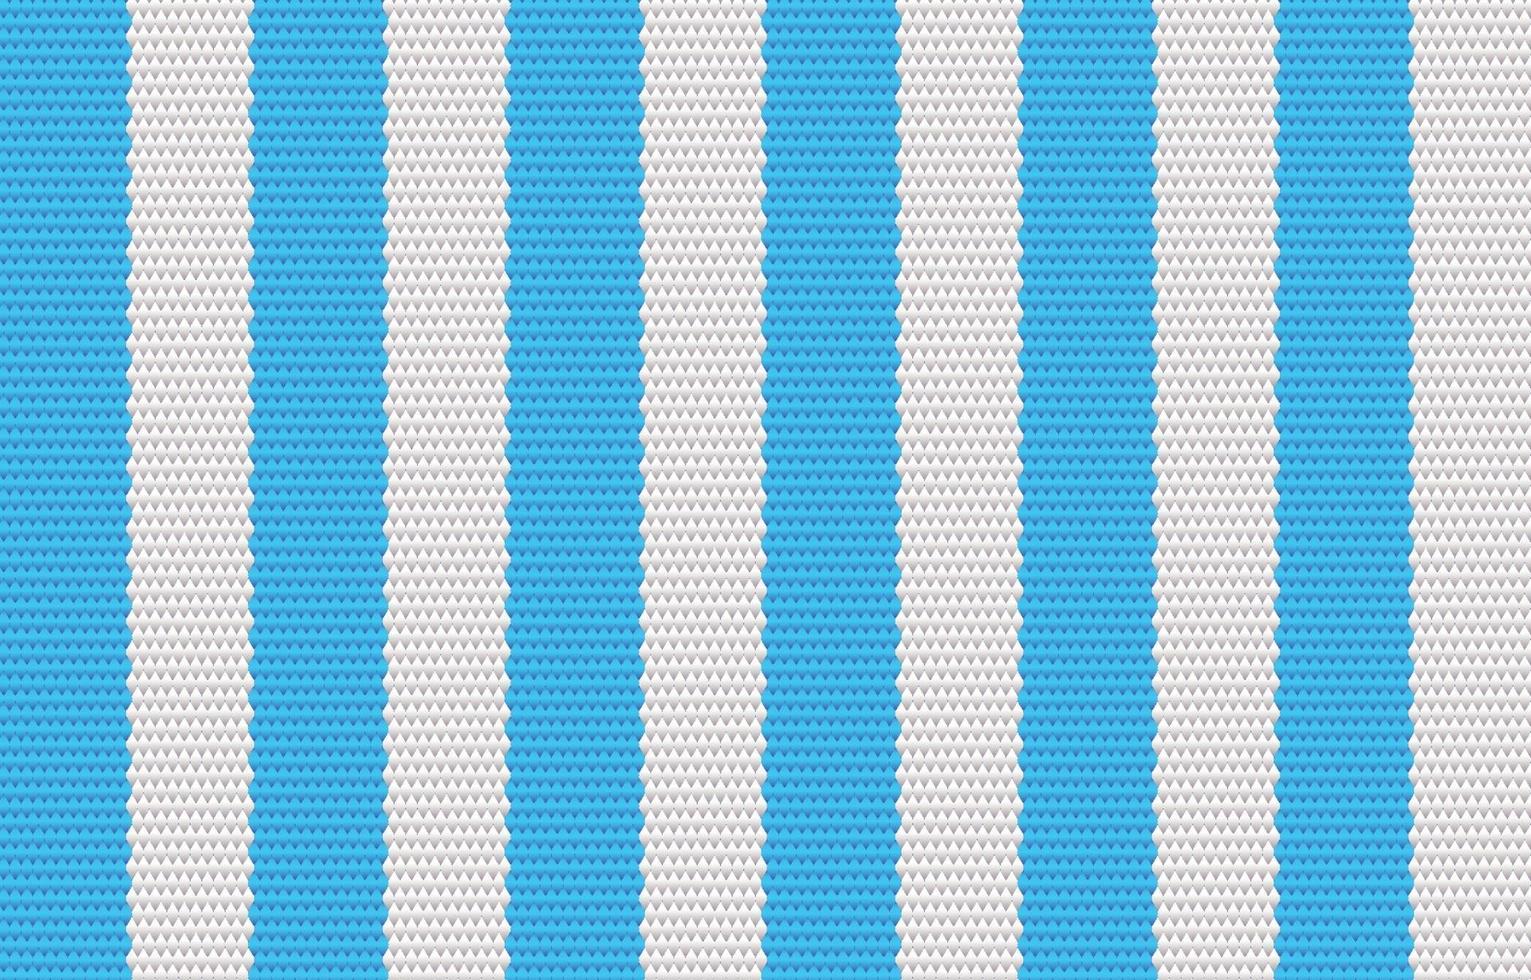 etnisch blauw geometrisch patroon in stoffenstijl. ontwerp voor tapijt, behang, kleding, verpakking, batik, stof, vector illustratie borduurstijl in etnische thema's.